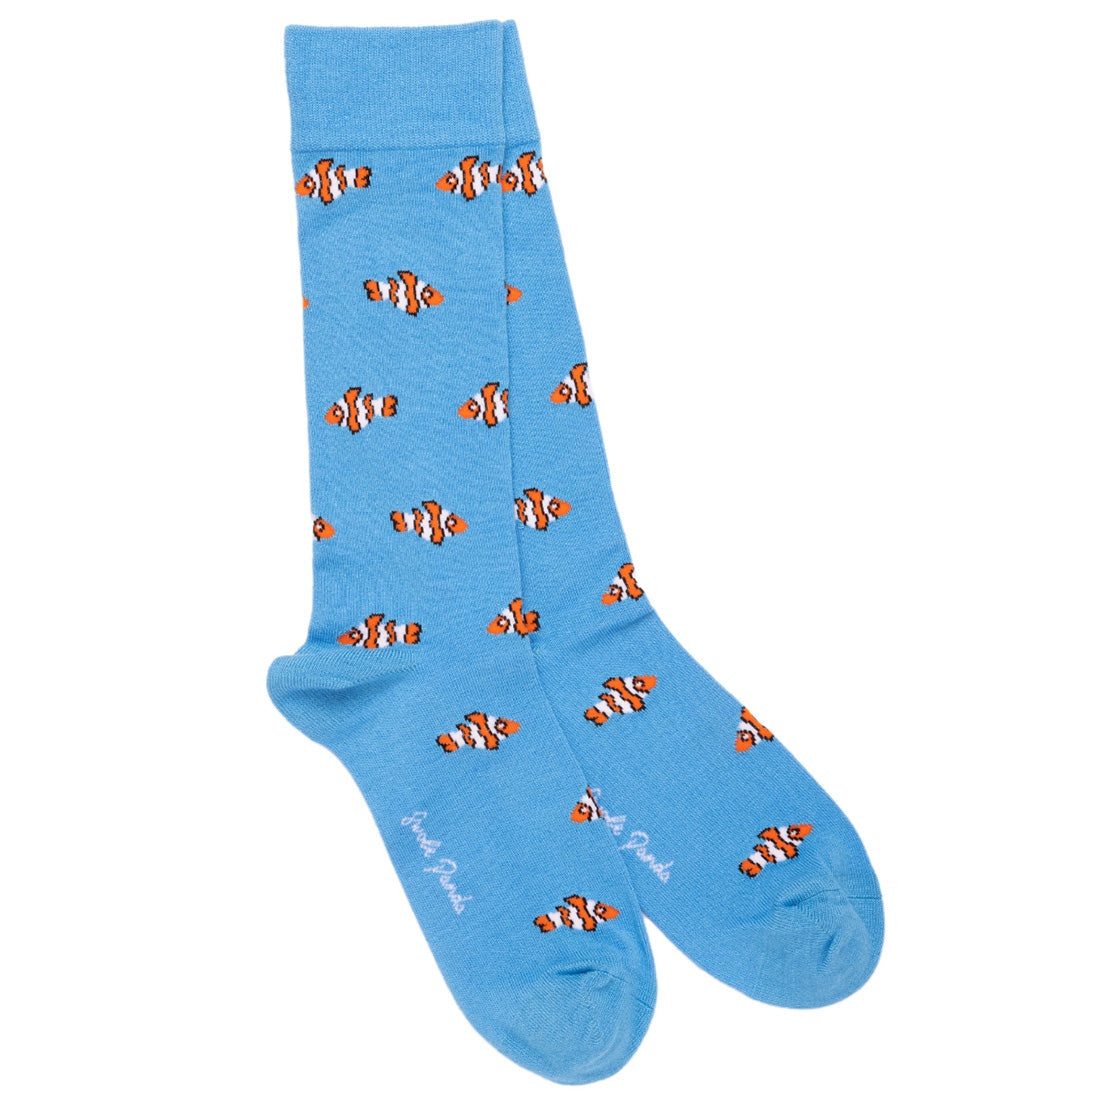 Swole Panda Socks - Clown Fish